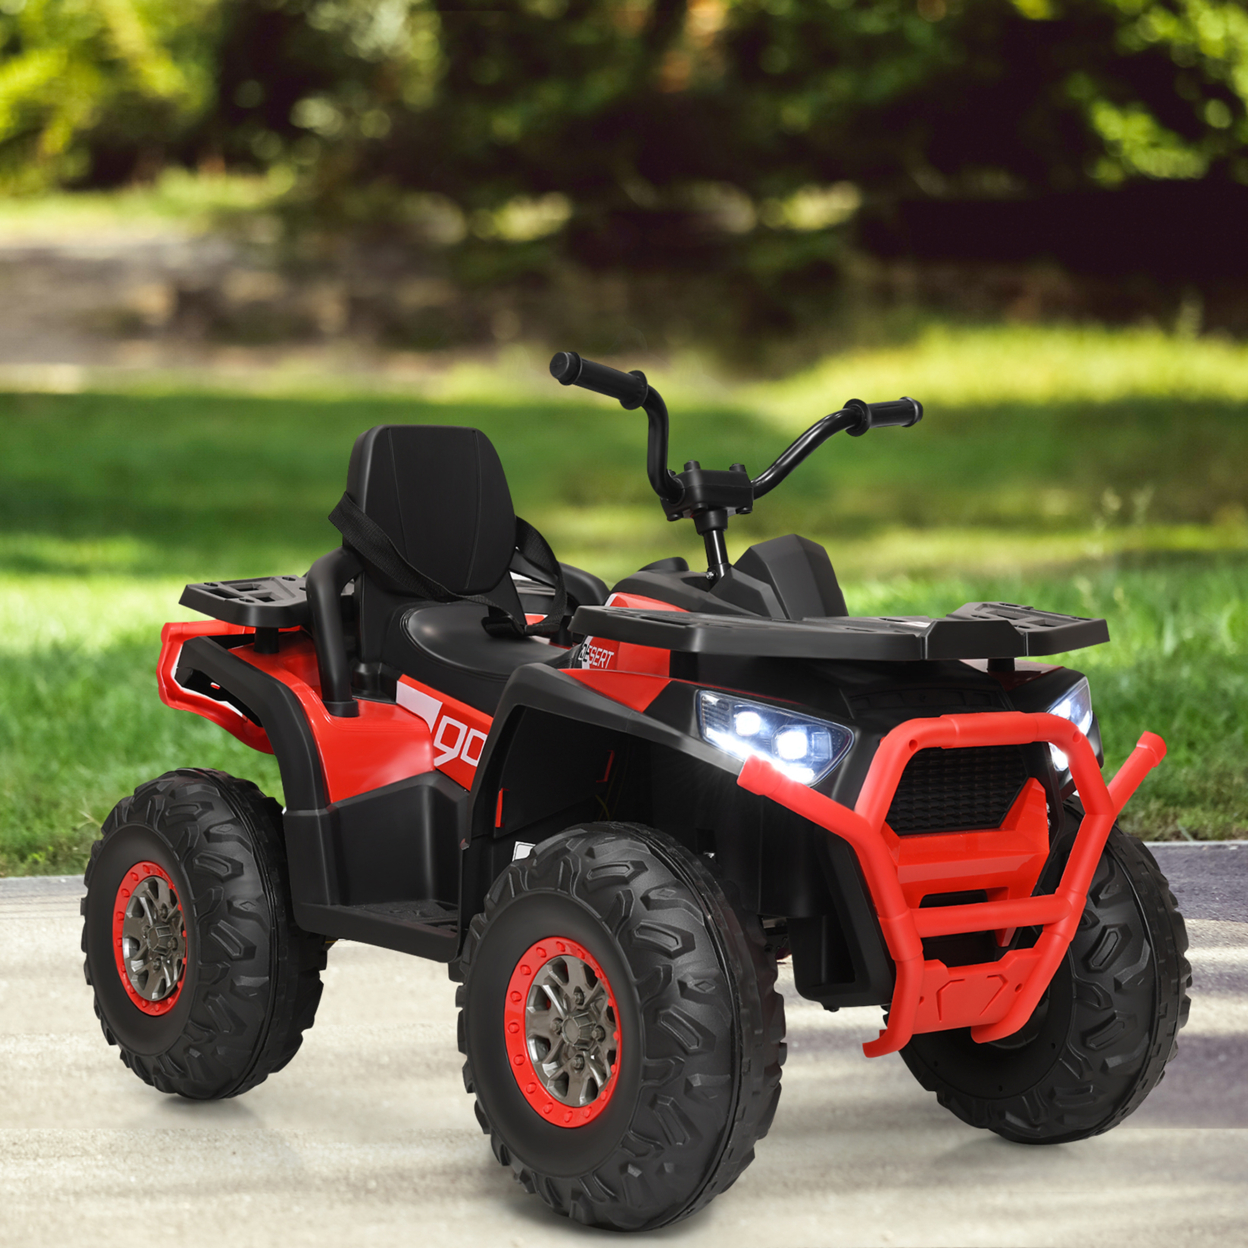 12V Electric Kids Ride On Car ATV 4-Wheeler Quad W/ LED Light Black/Red/White - Black